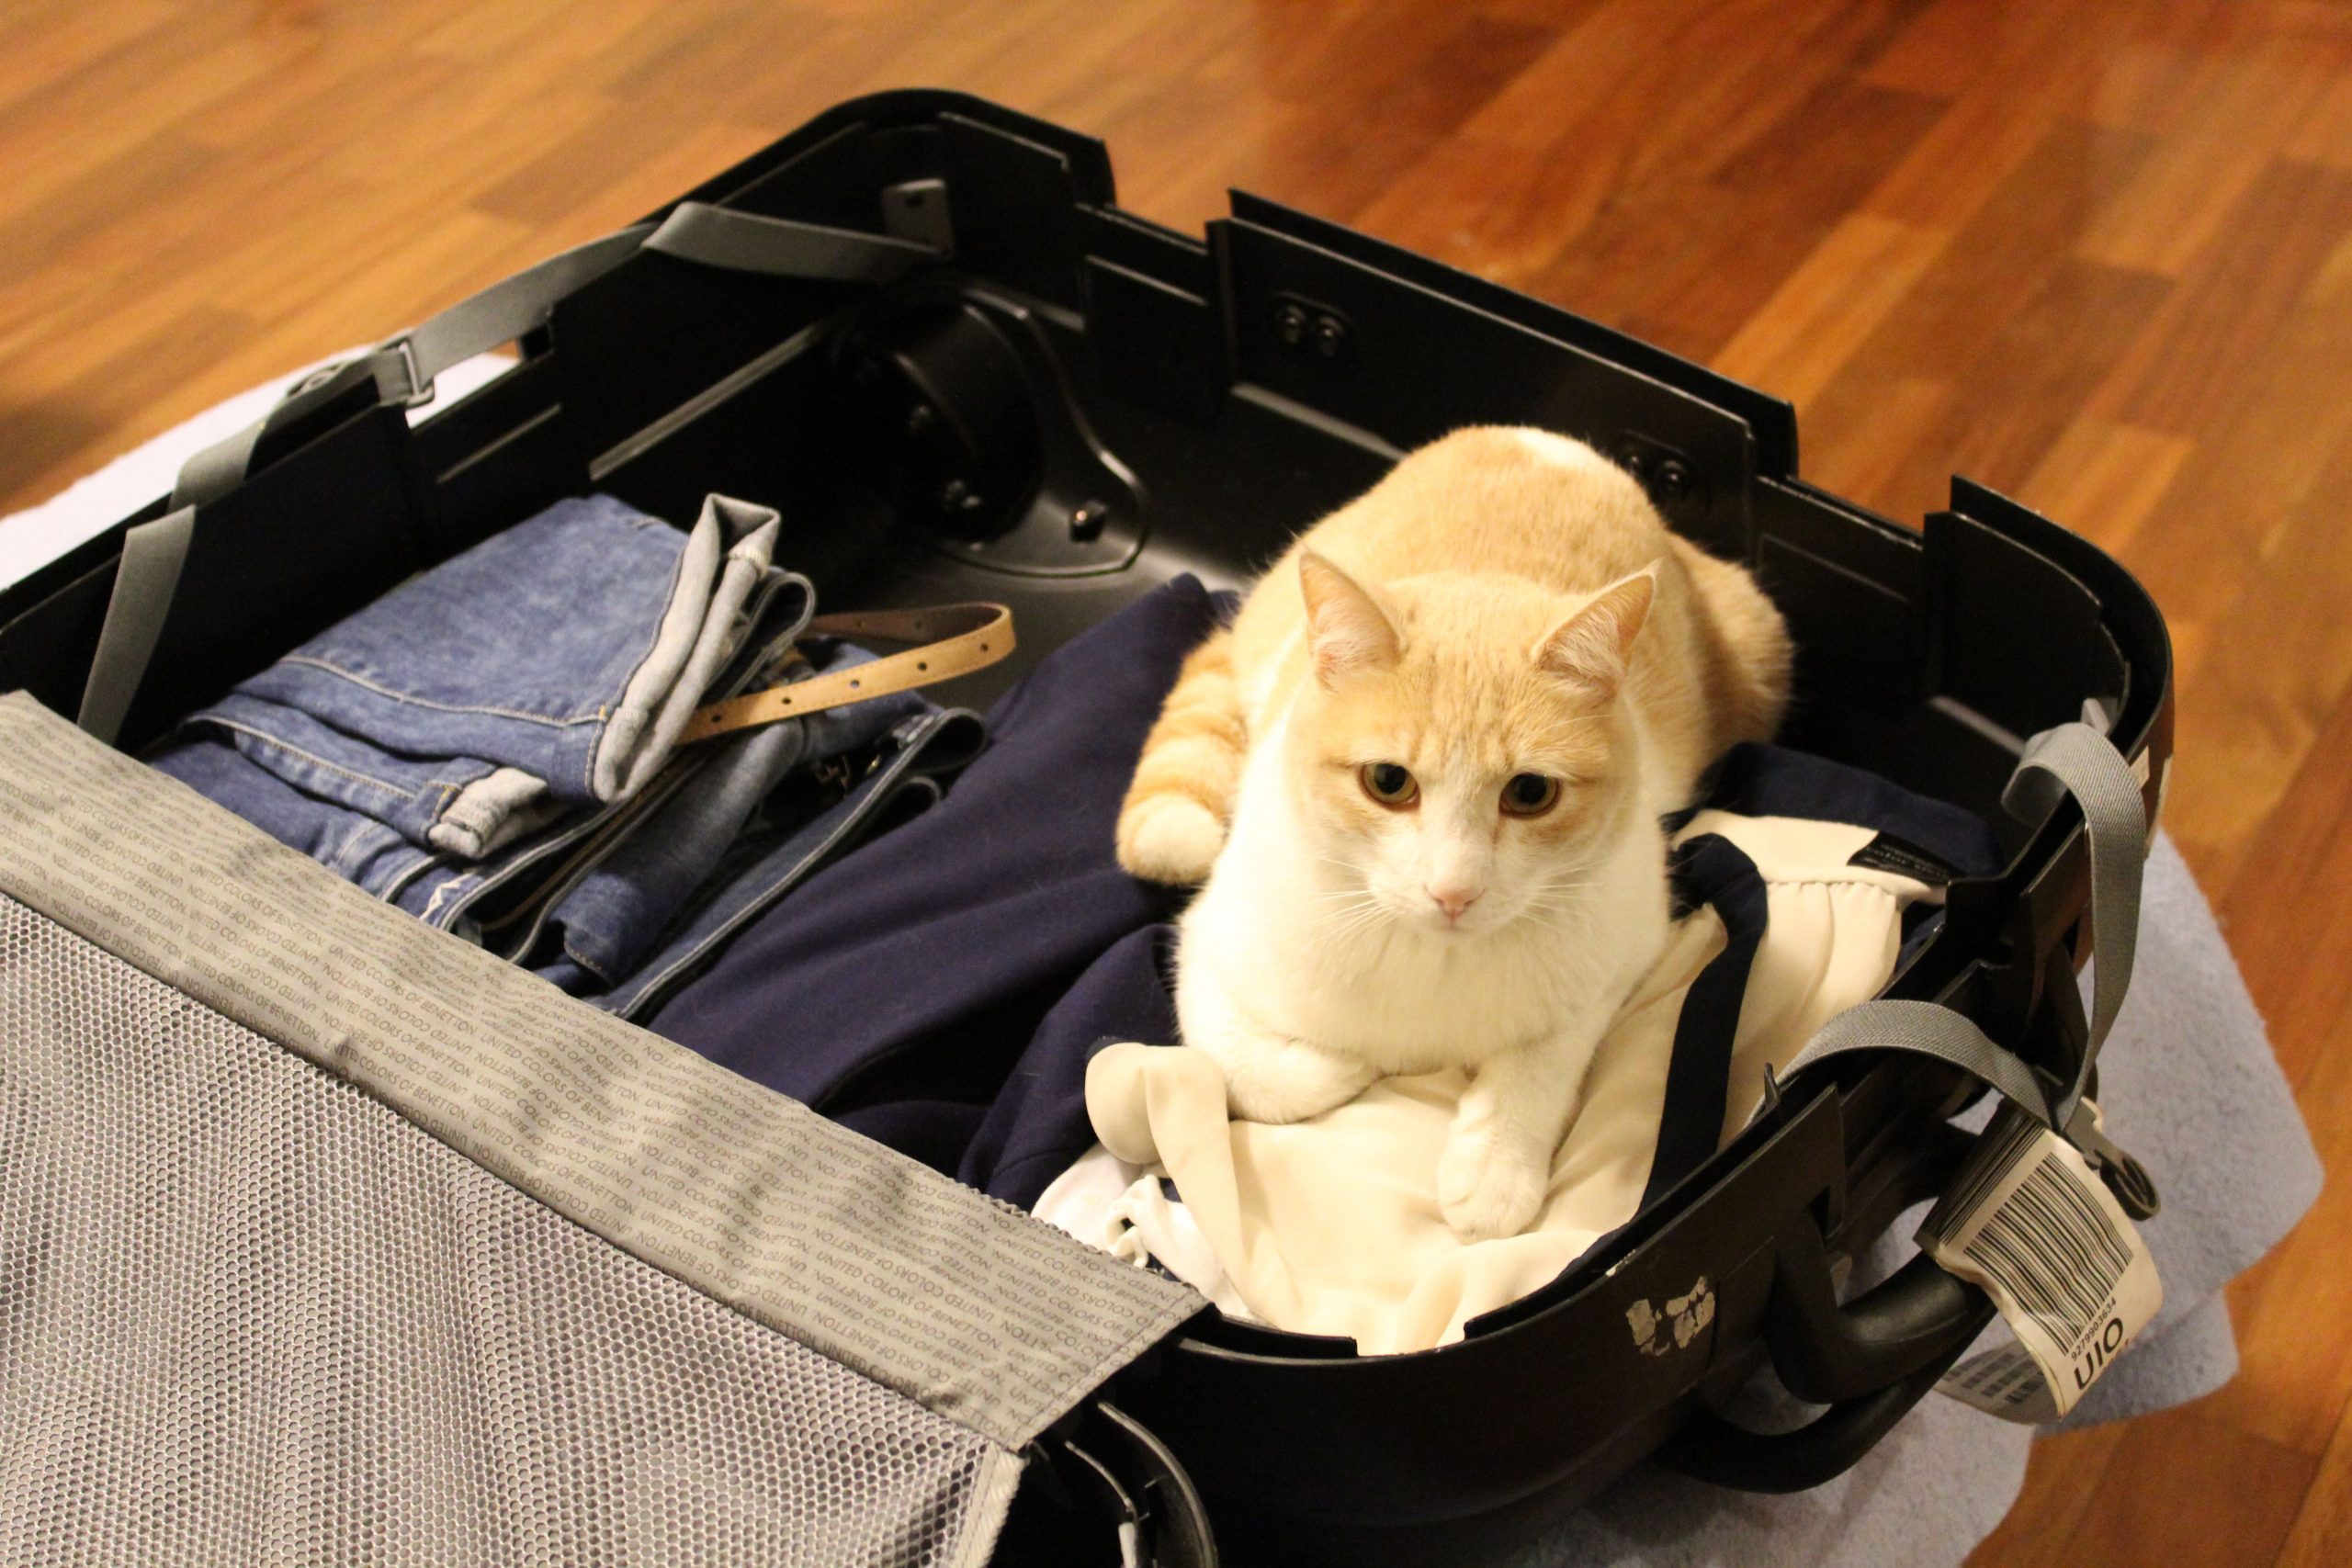 Qué artículos no puedo llevar en mi equipaje de bodega o cabina?